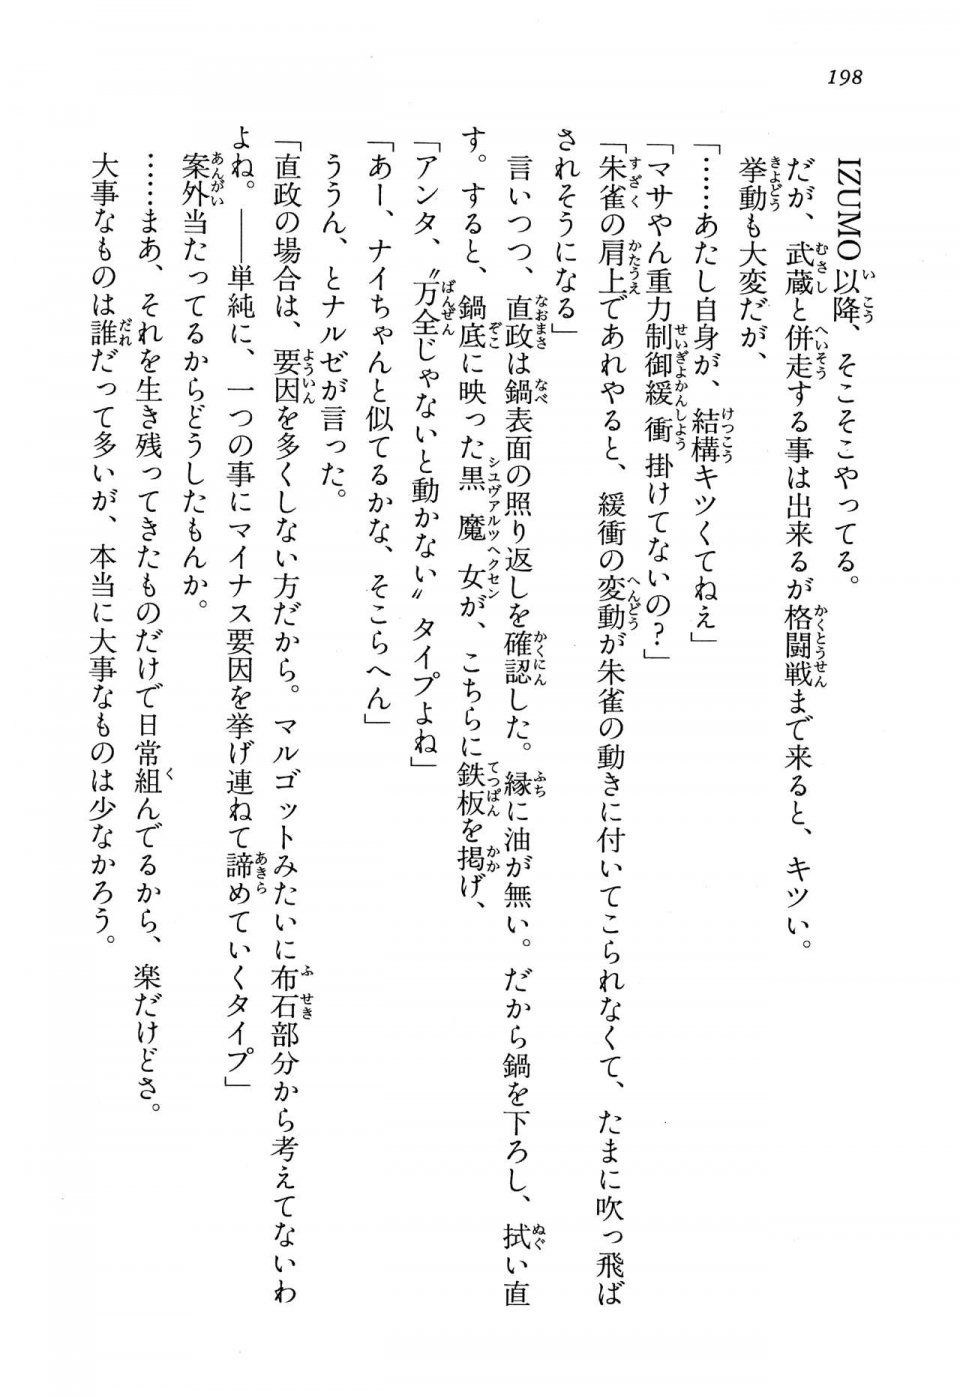 Kyoukai Senjou no Horizon LN Vol 13(6A) - Photo #198